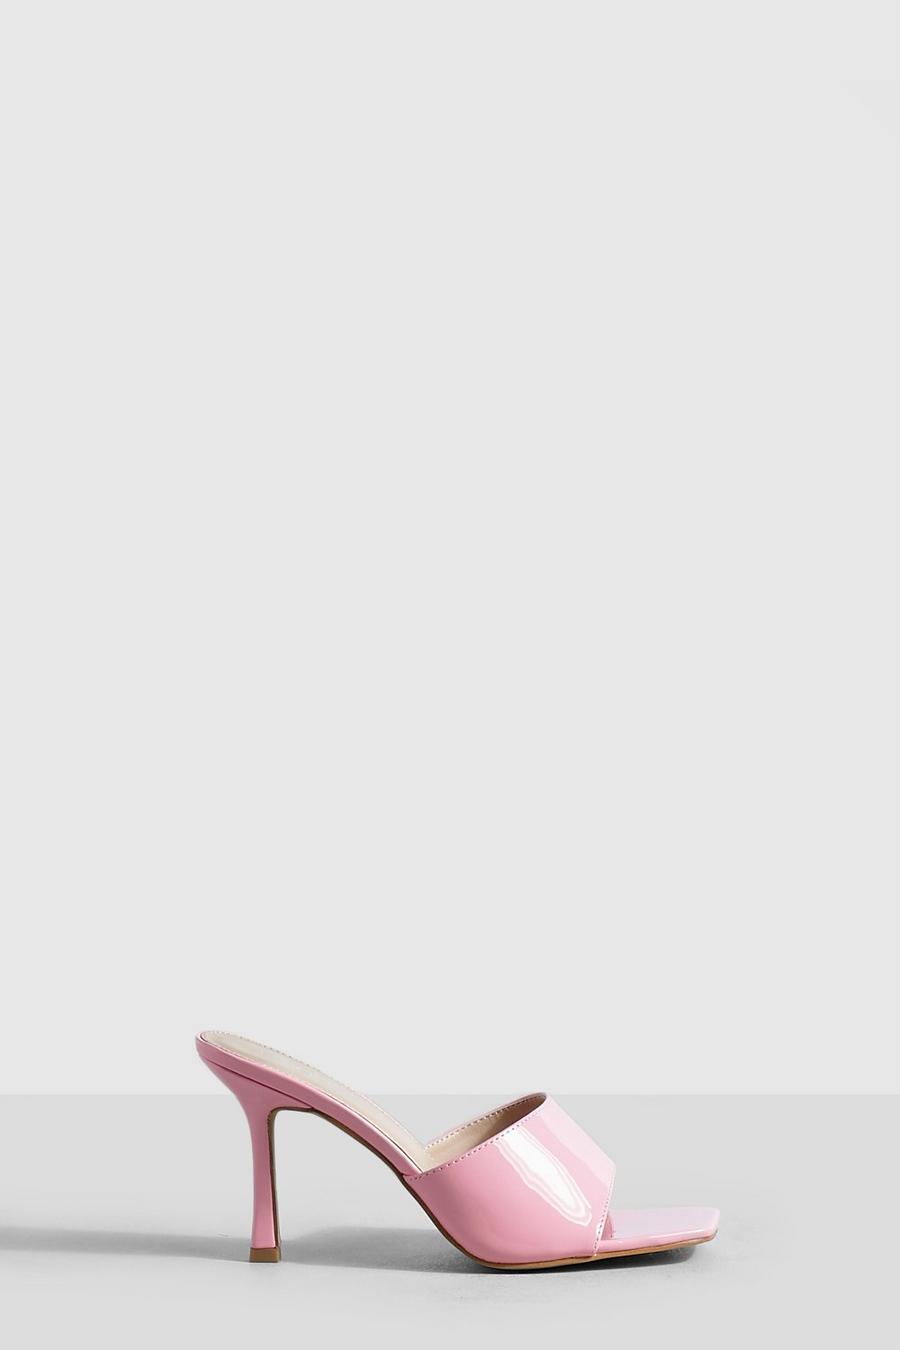 Sandalias mule minimalistas de holgura ancha con puntera cuadrada, Baby pink